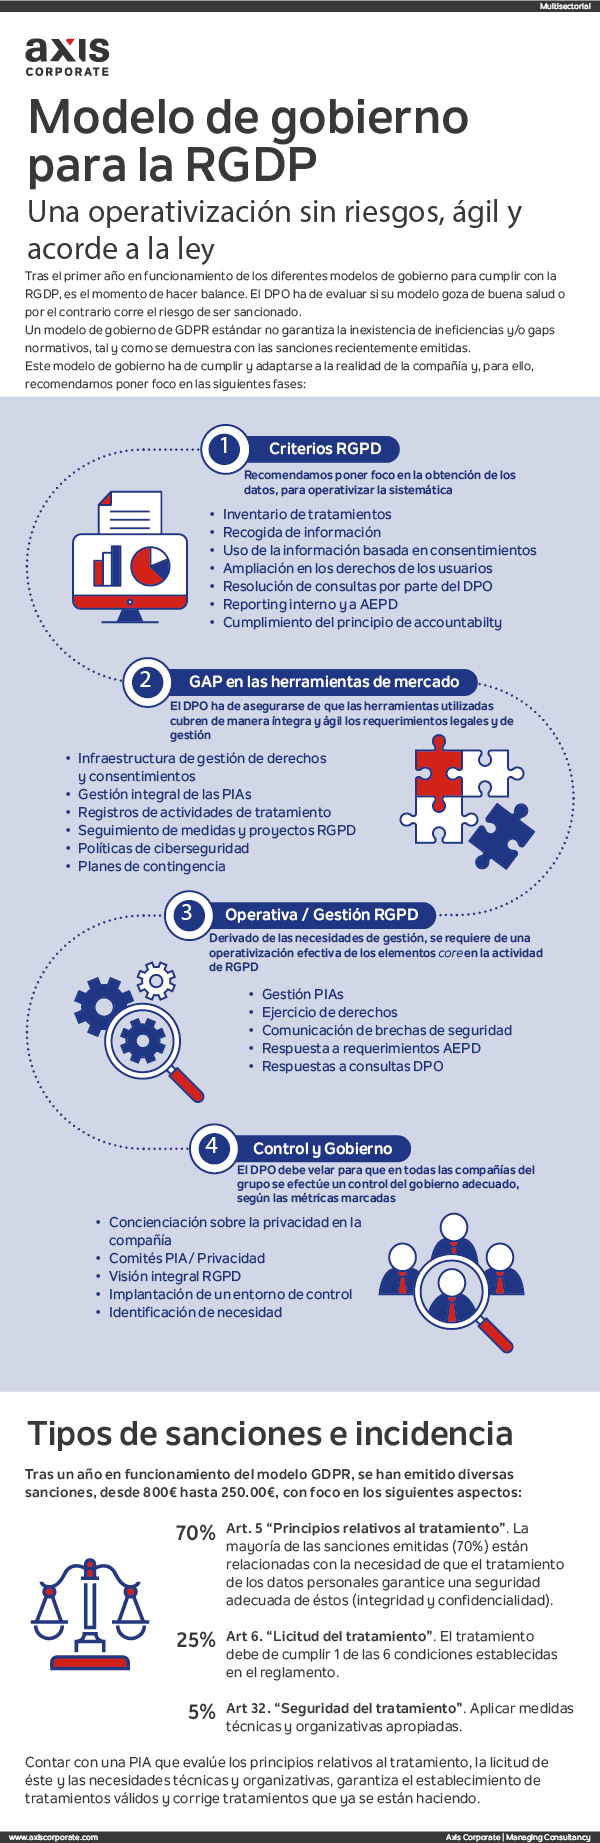 Infografía sobre el modelo de gobierno para la operativización de la GDPR y sanciones